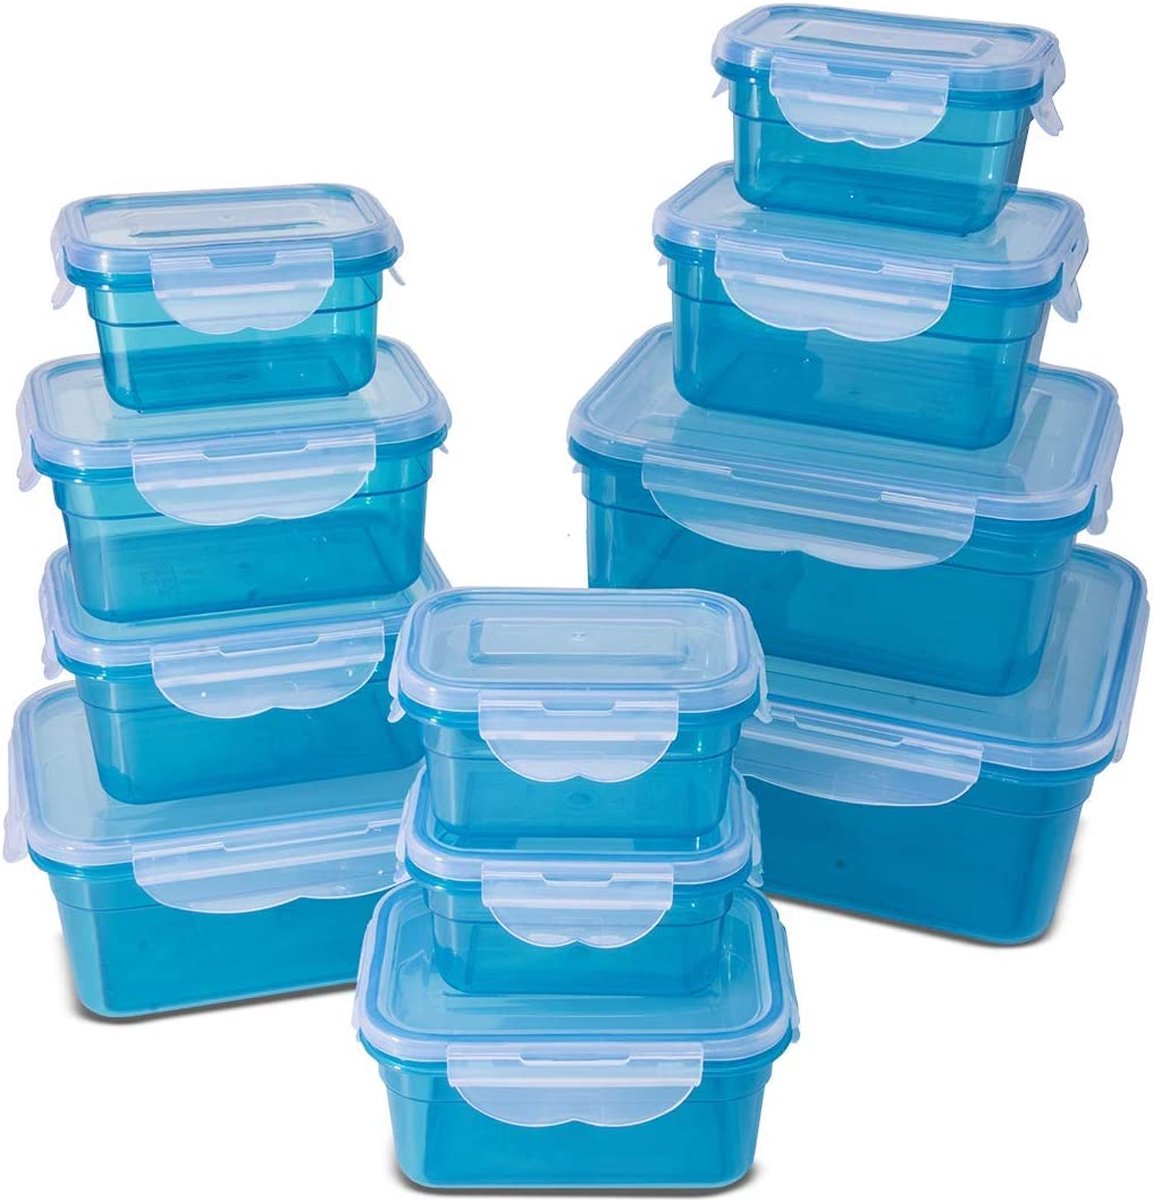 Voedselopslagcontainers, klikslot, luchtdichte opbergdozen, 22 stuks, geschikt voor magnetron, vriezer en vaatwasser, blauw (set van 11 dozen - totaal 22 stuks)